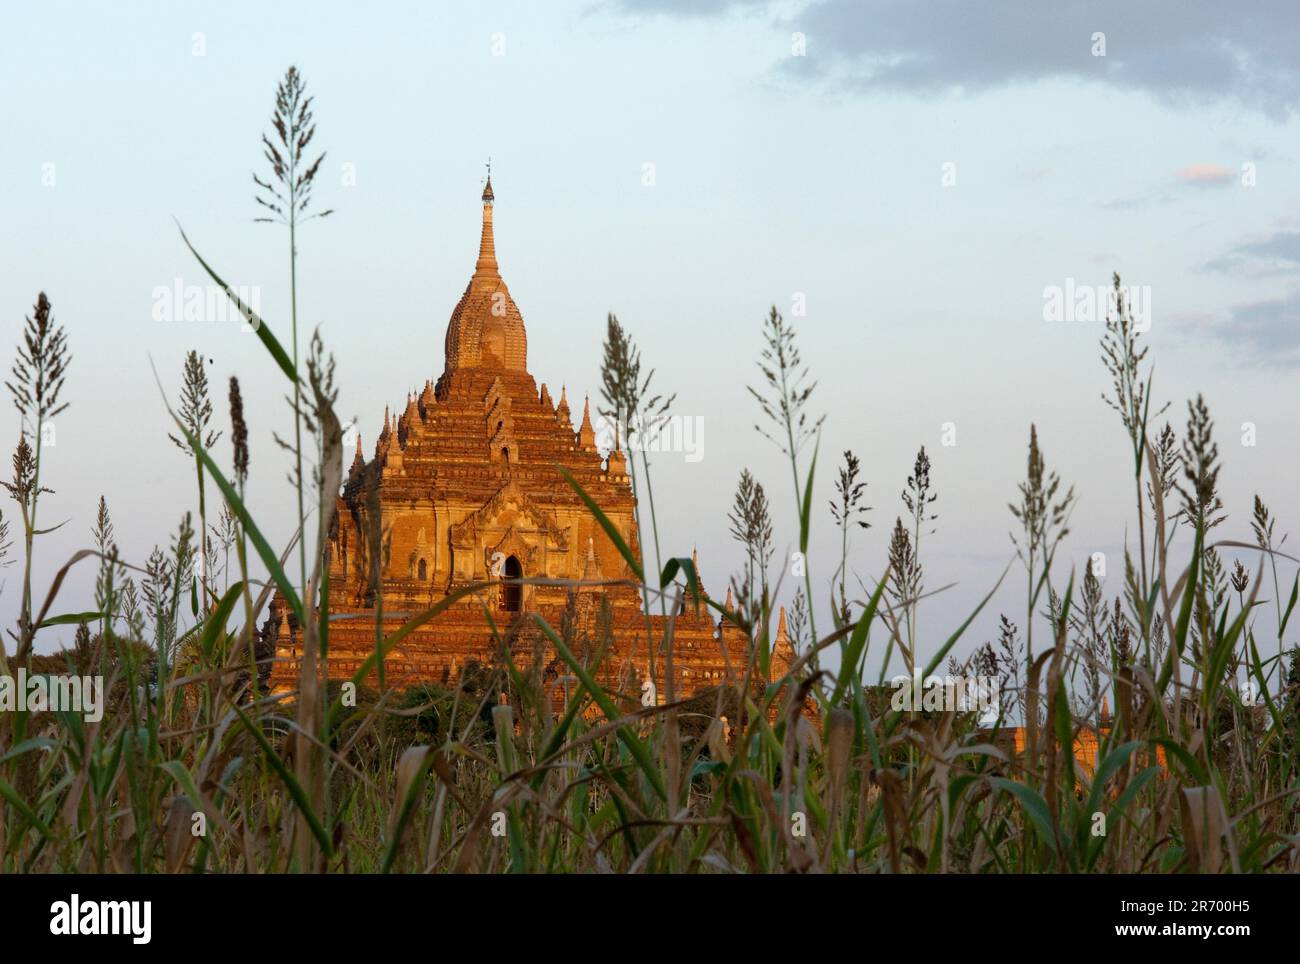 La pagode Htilominlo Pahto de 150 mètres de haut, datant du 13th siècle, s'élève au-dessus des cultures des résidents Banque D'Images